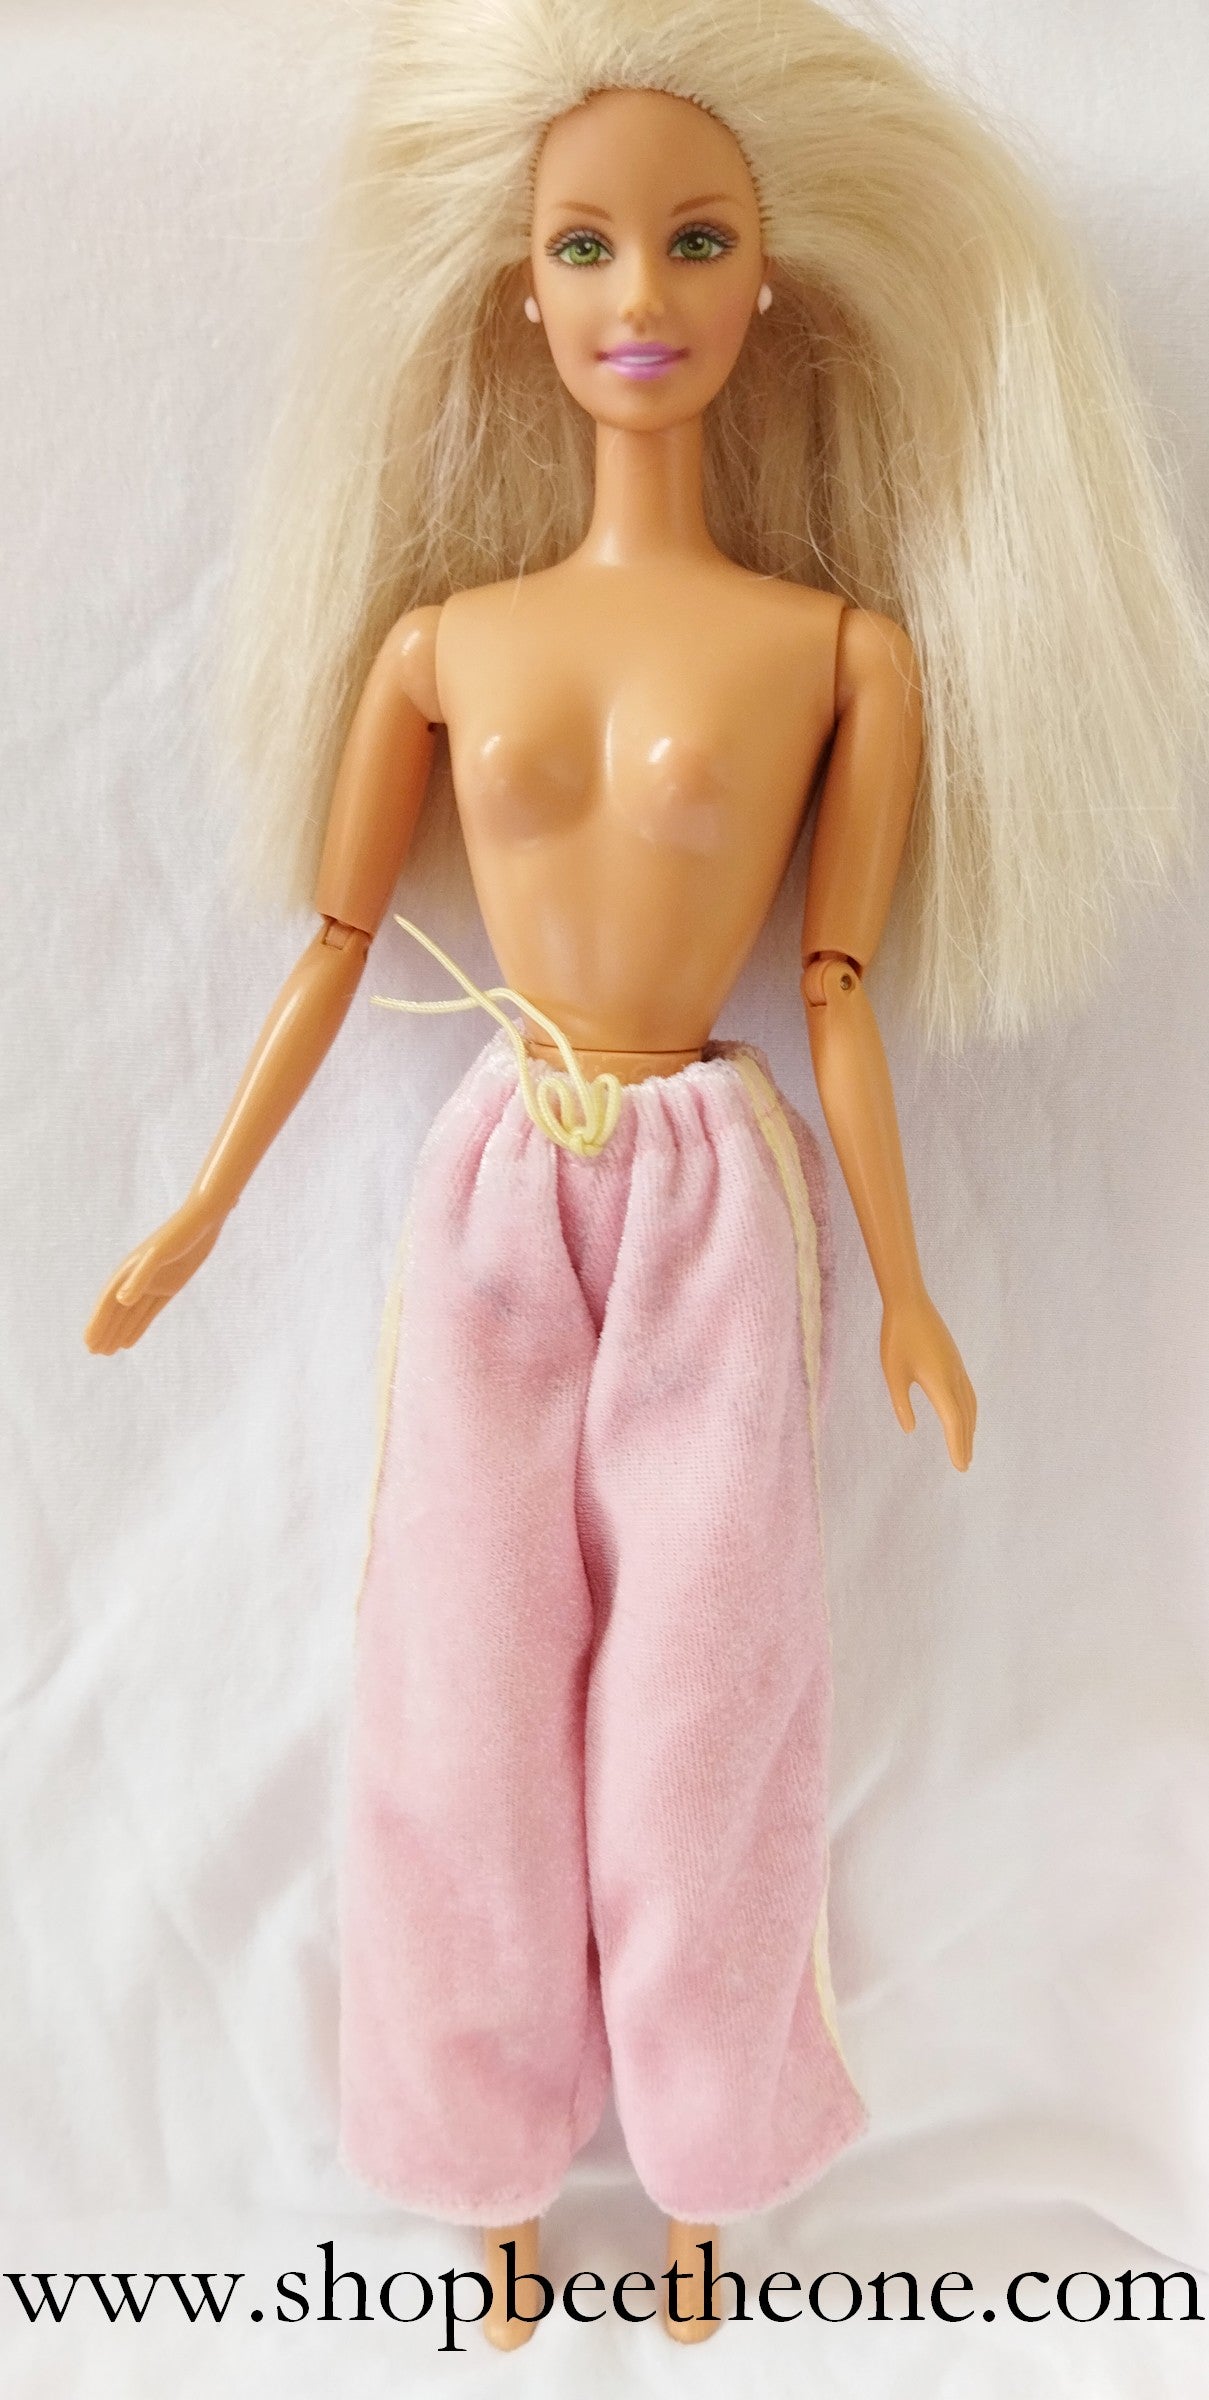 Barbie et Krissy Bedtime Baby - Mattel 2000 - Poupée - vêtement